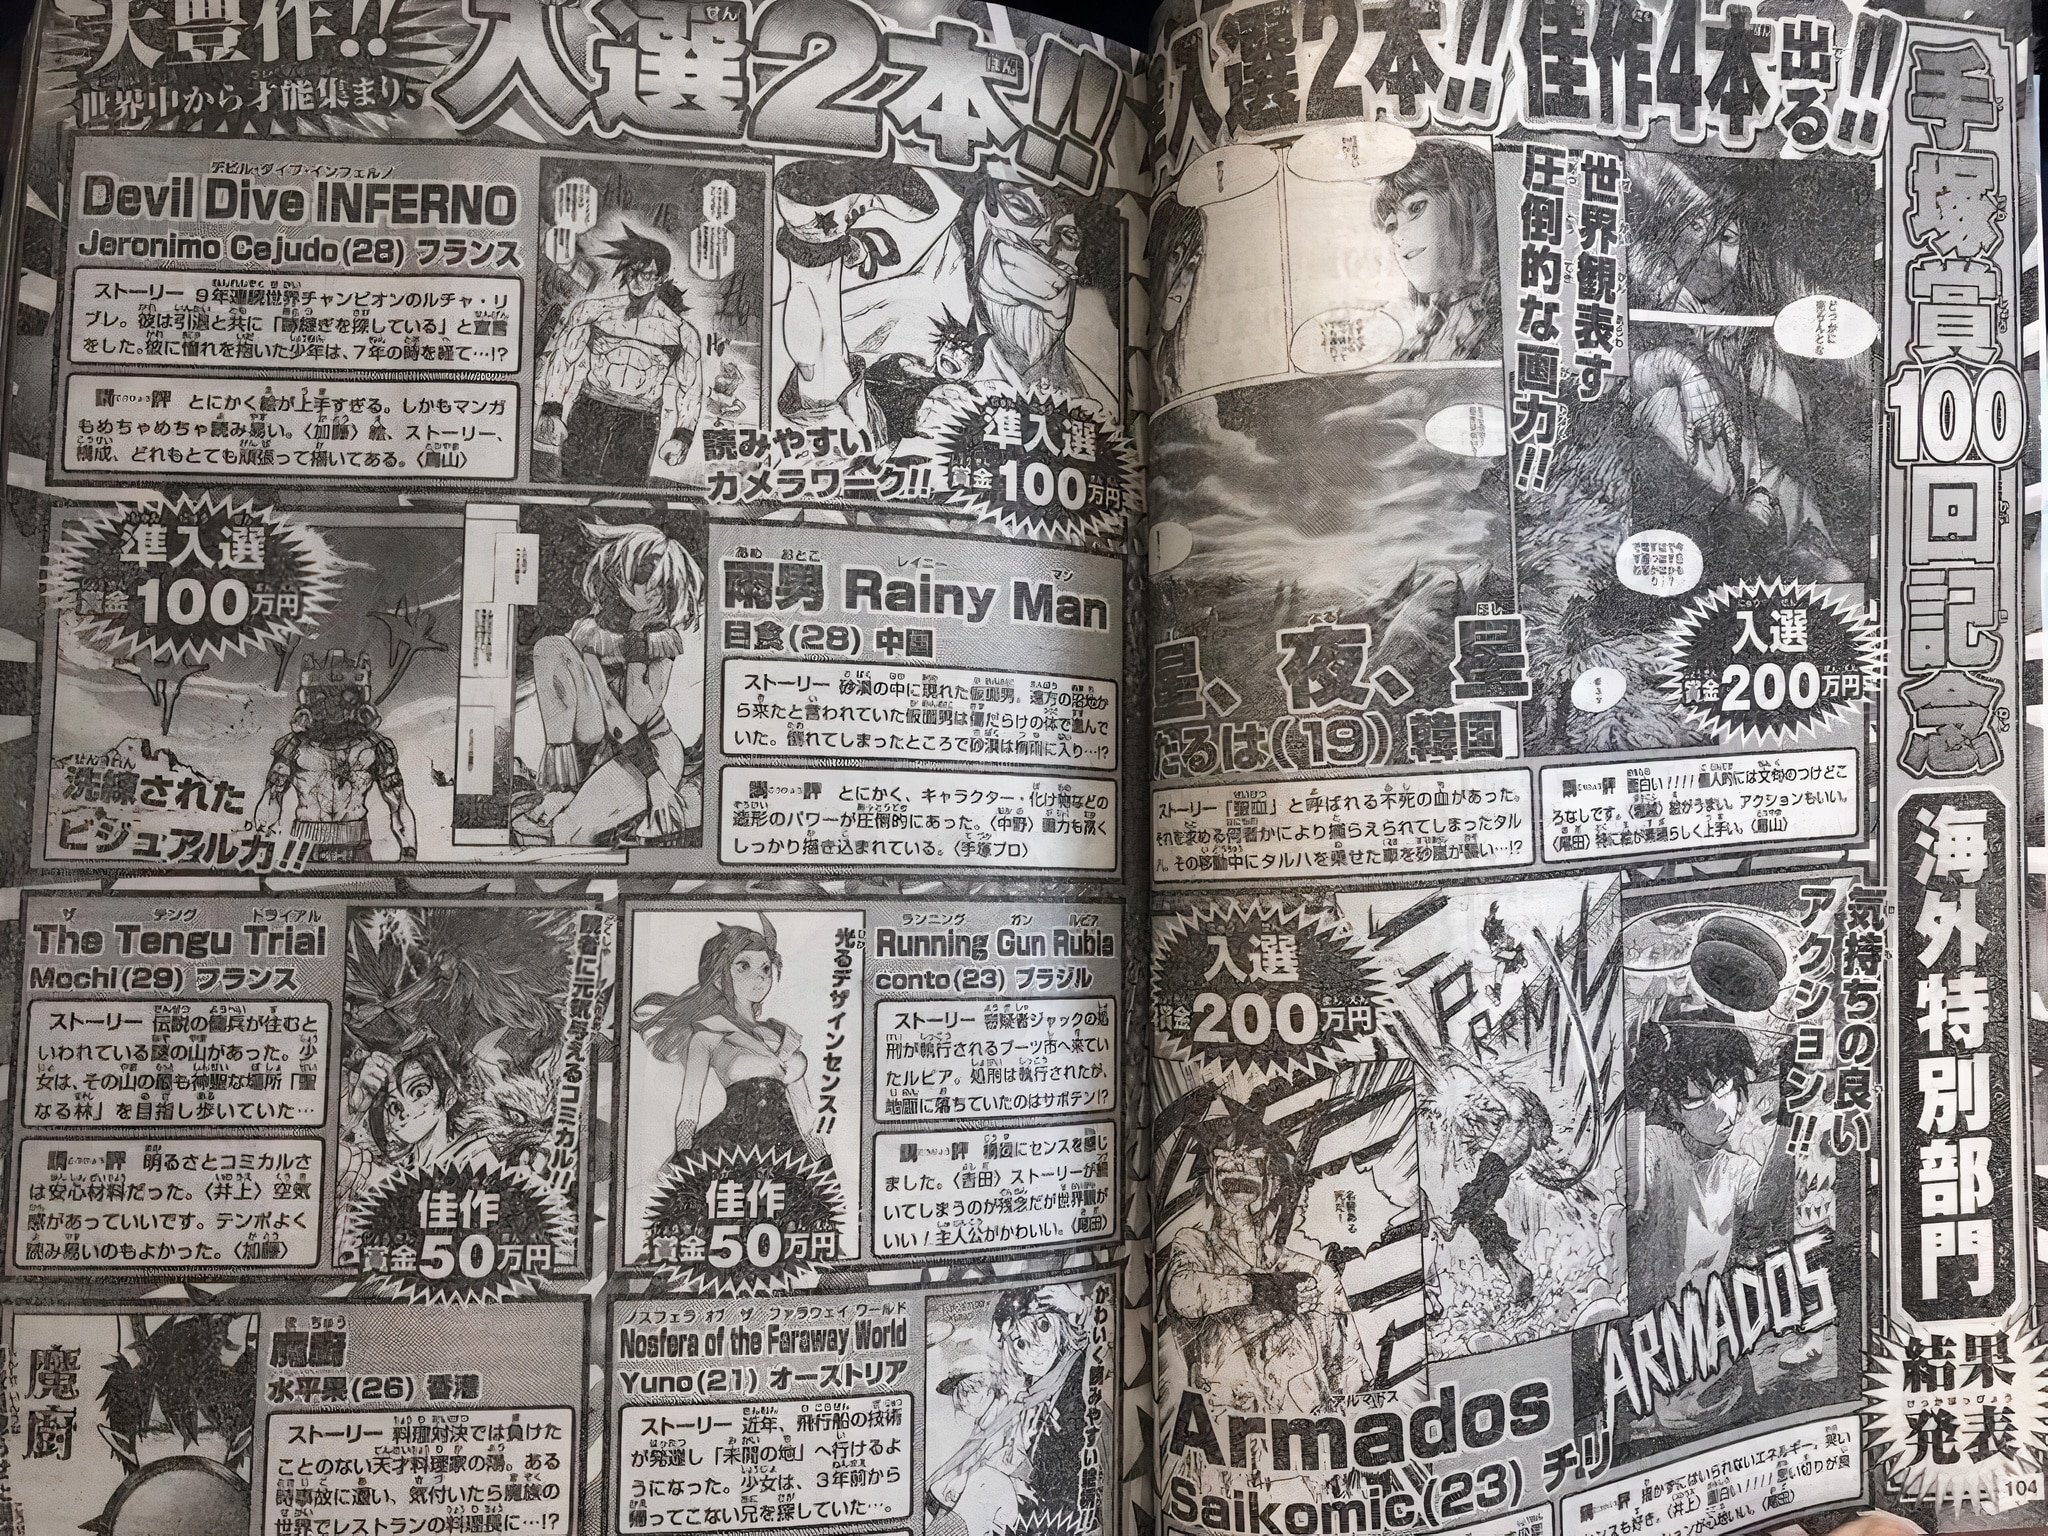 Annonce des résultats du Jump Tezuka Manga Contest 2020